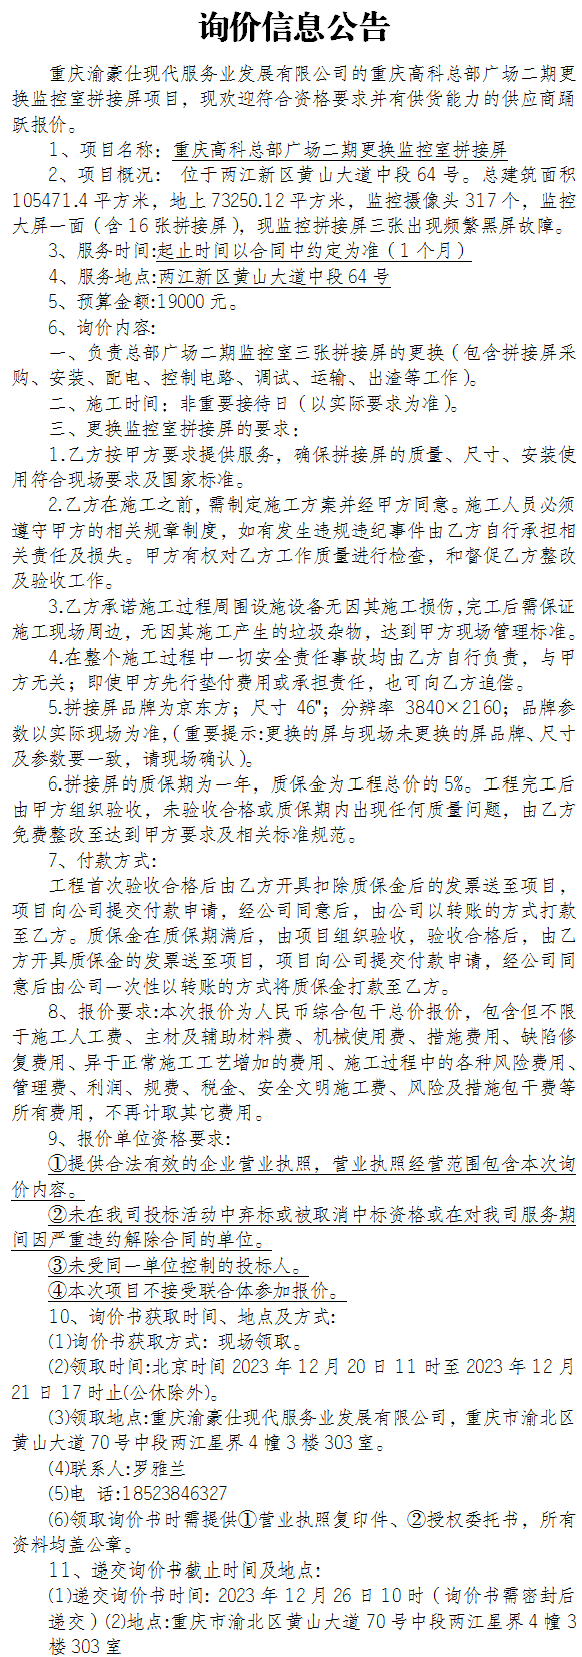 重庆高科总部广场二期更换监控室拼接屏项目询价公告